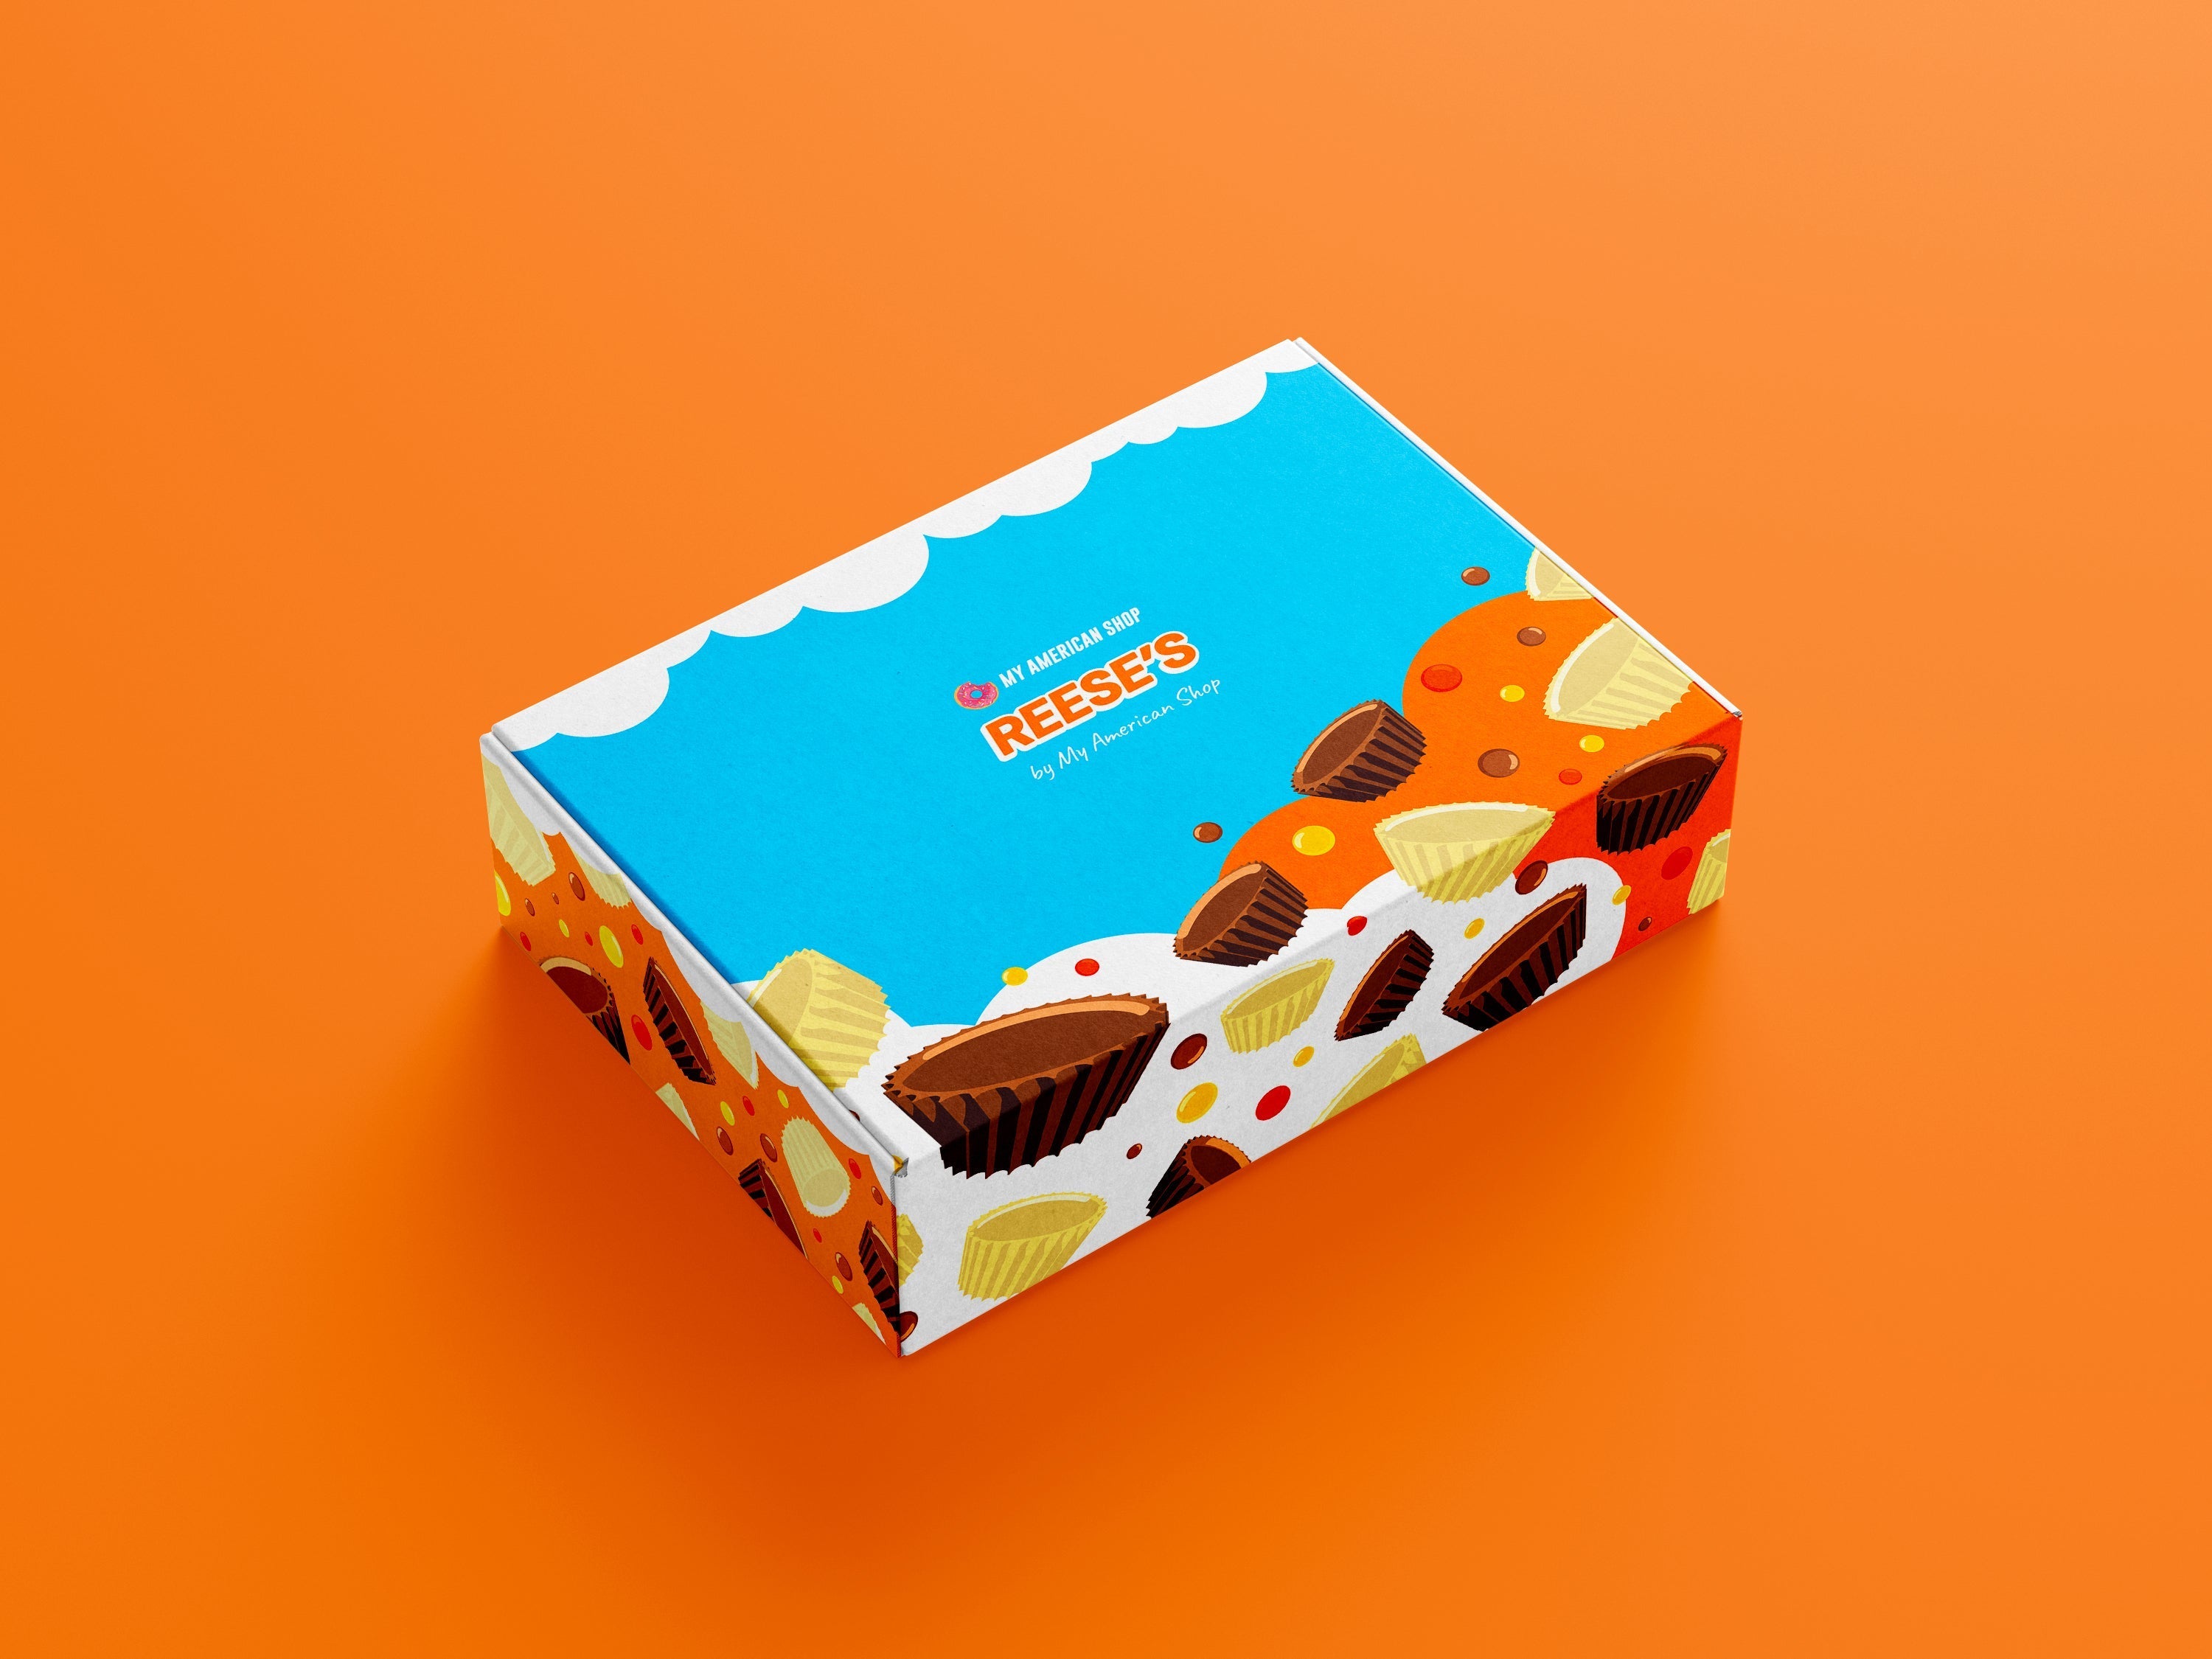 Un carton bleu et blanc avec des dessins de cups Reese’s chocolat au lait et chocolat blanc, le tout sur fond orange